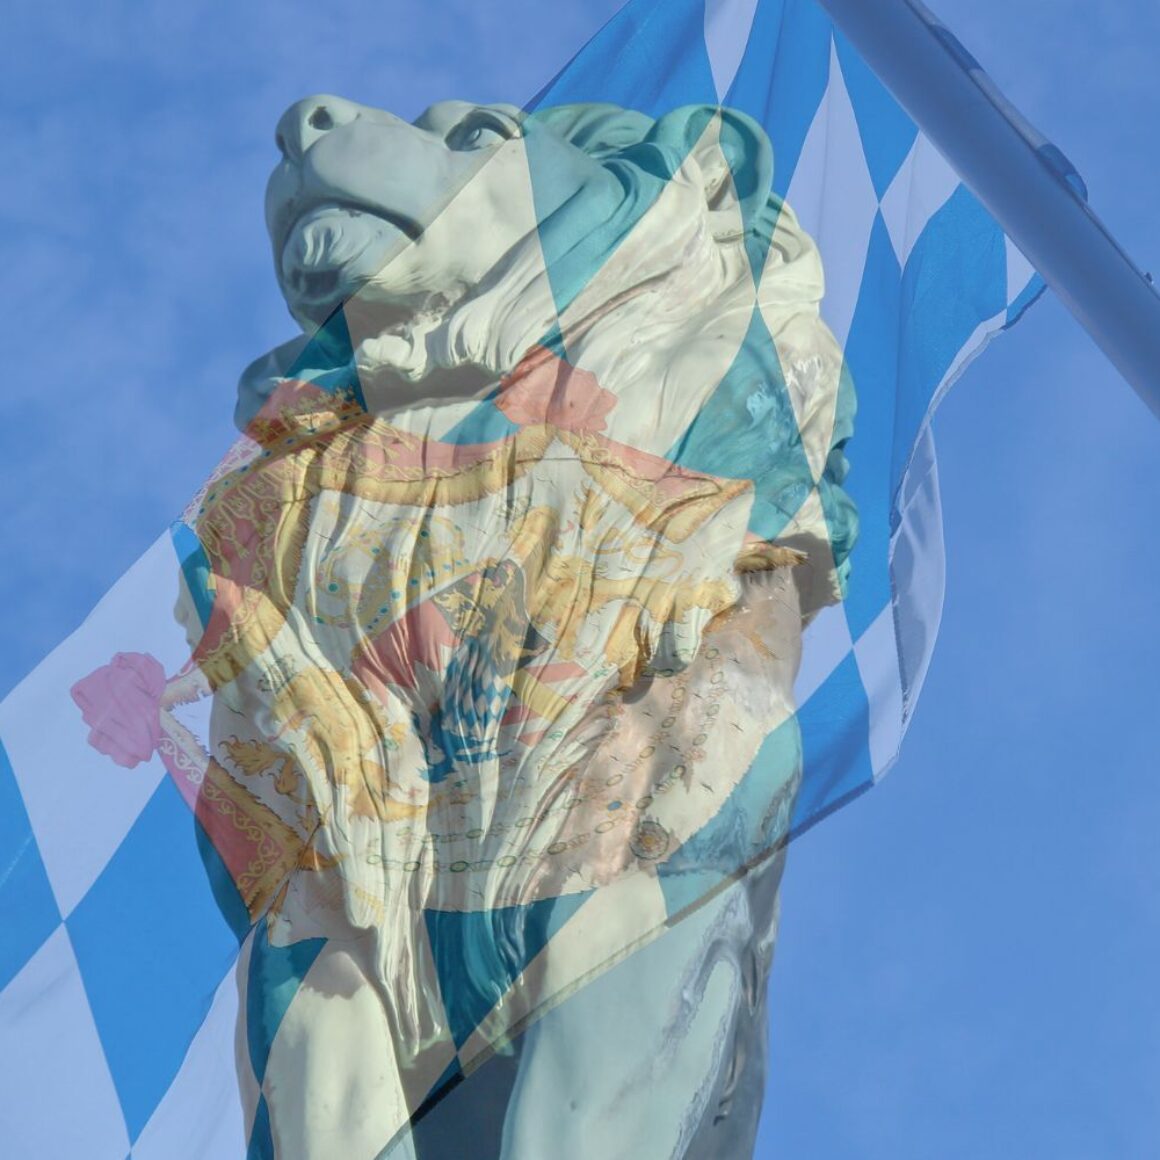 Bayerischer Löwe (Statue) vor blauem Himmel, bayerische Flagge im Hintergrund